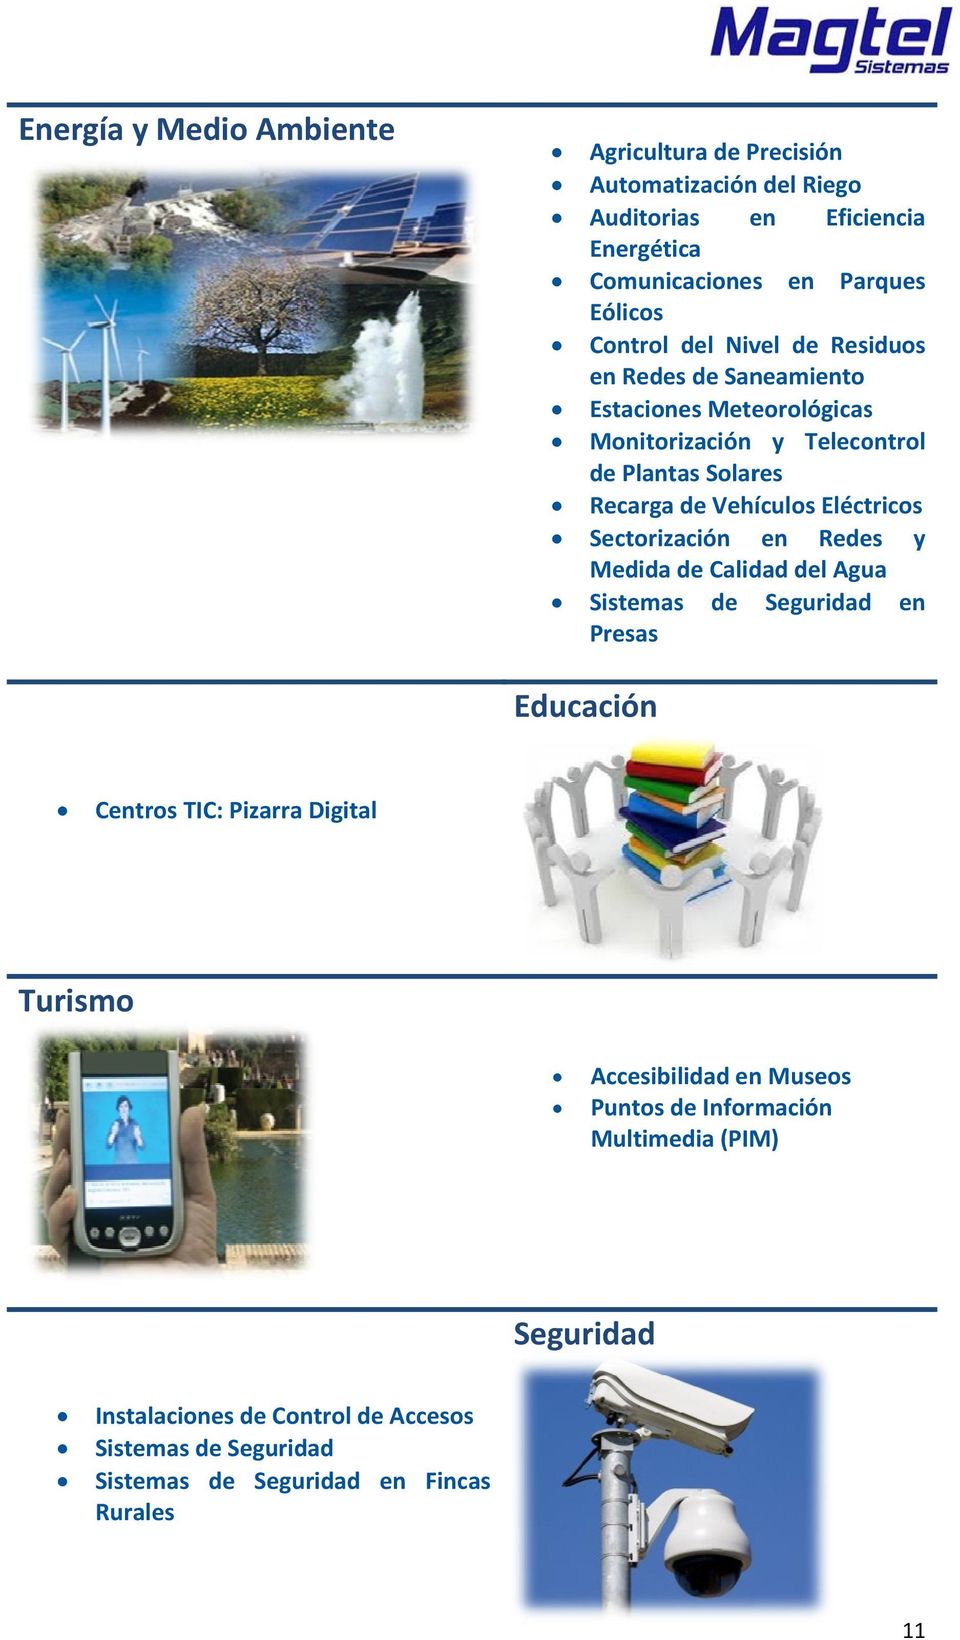 Sectorización en Redes y Medida de Calidad del Agua Sistemas Presas de Seguridadd en Educació n Centros TIC: Pizarraa Digital Turismo Accesibilidad en